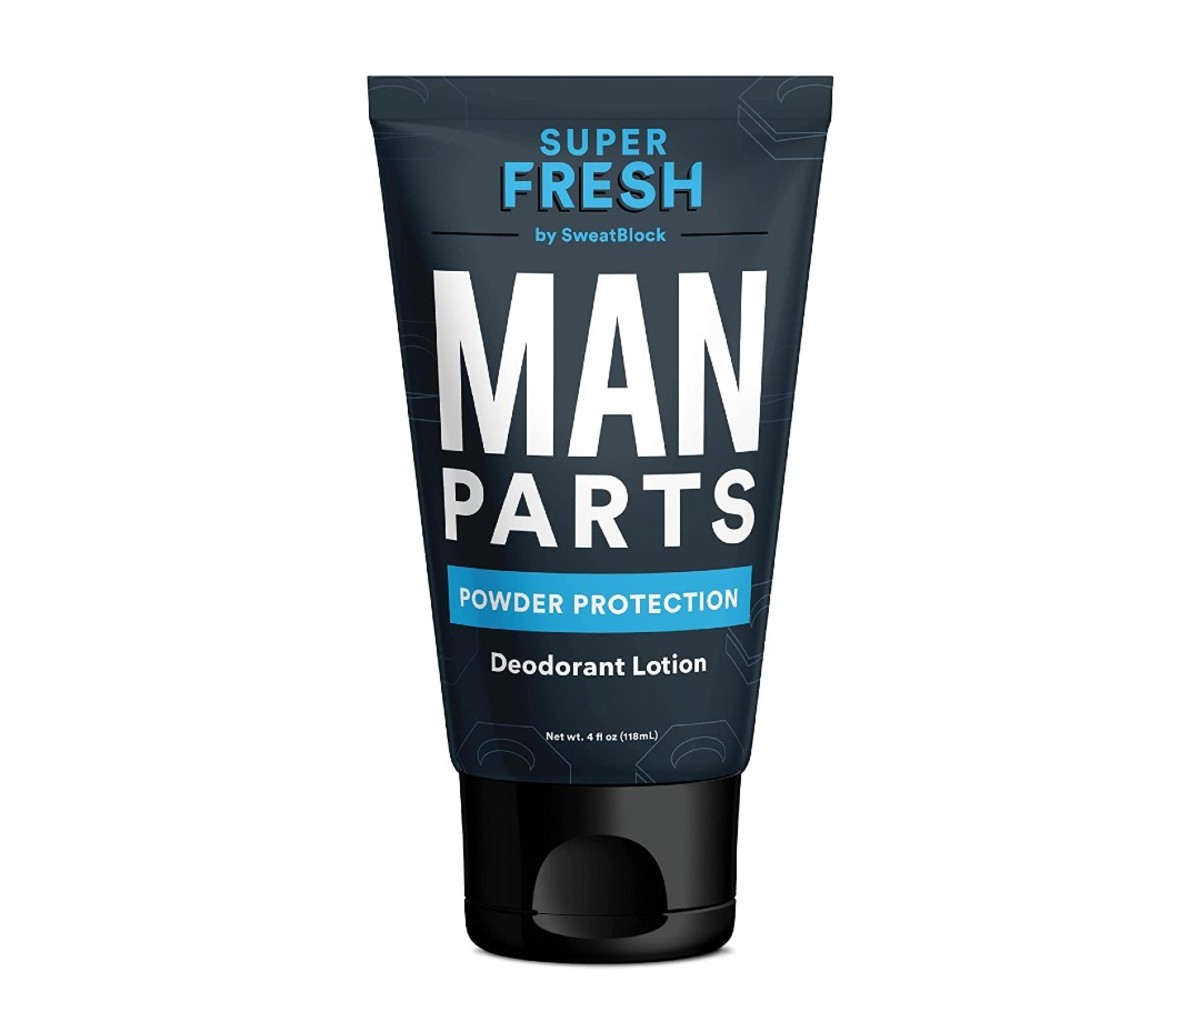 Super Fresh Man Parts